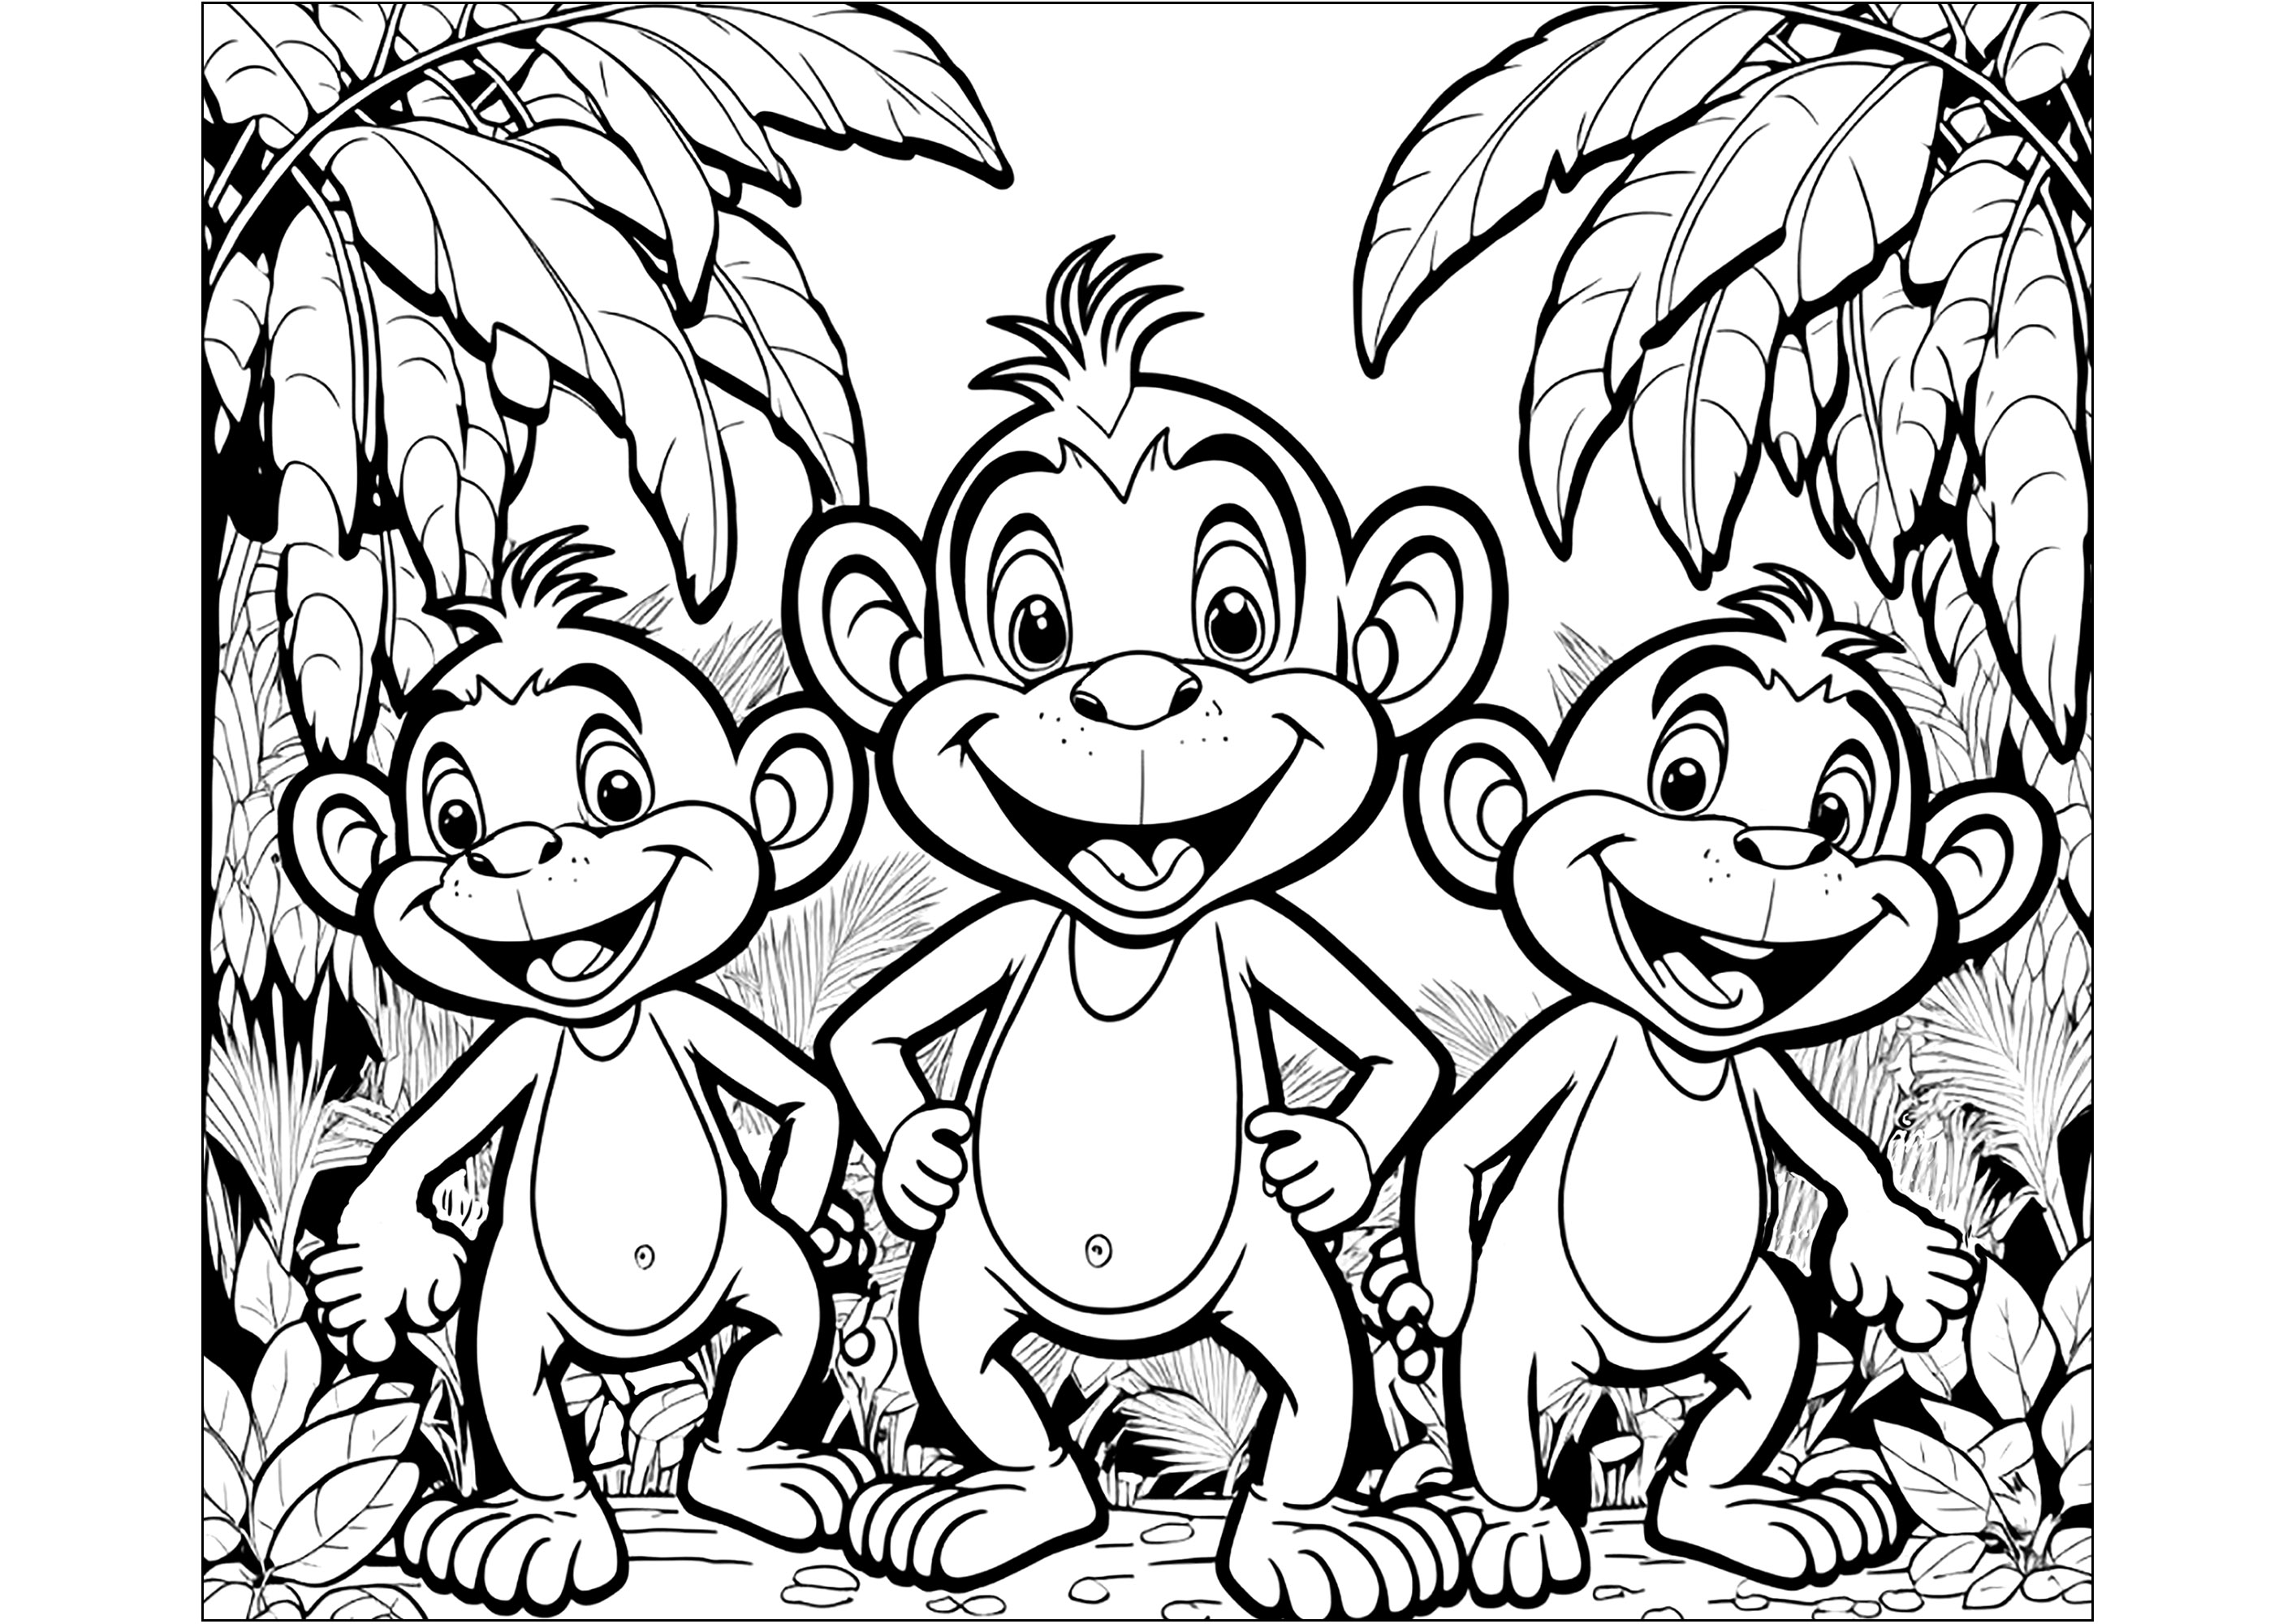 Colorindo a Selva: Macacos Fofos.